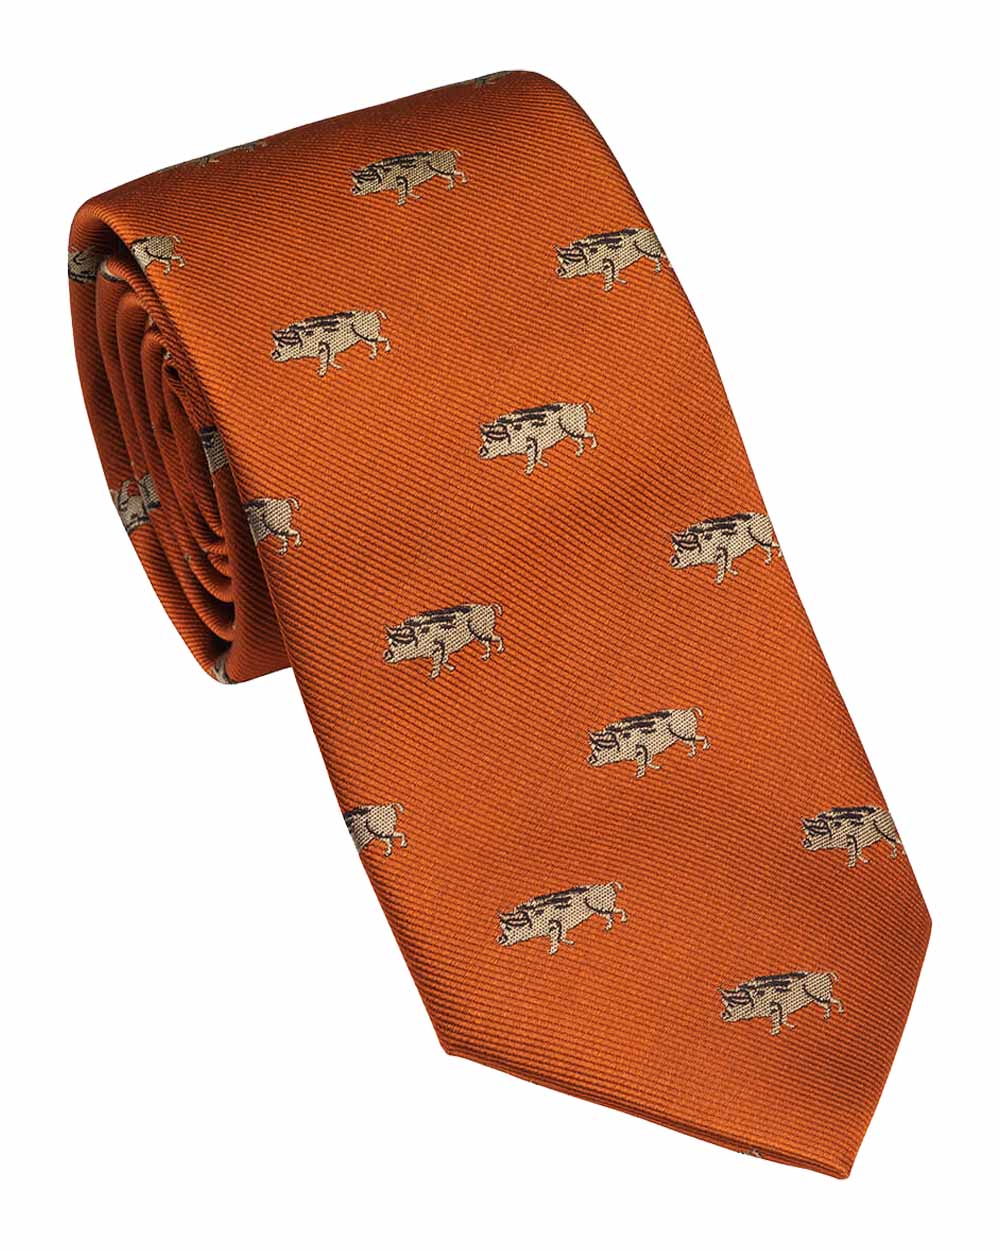 Blood Orange coloured Laksen Wild Boar Tie on White background 